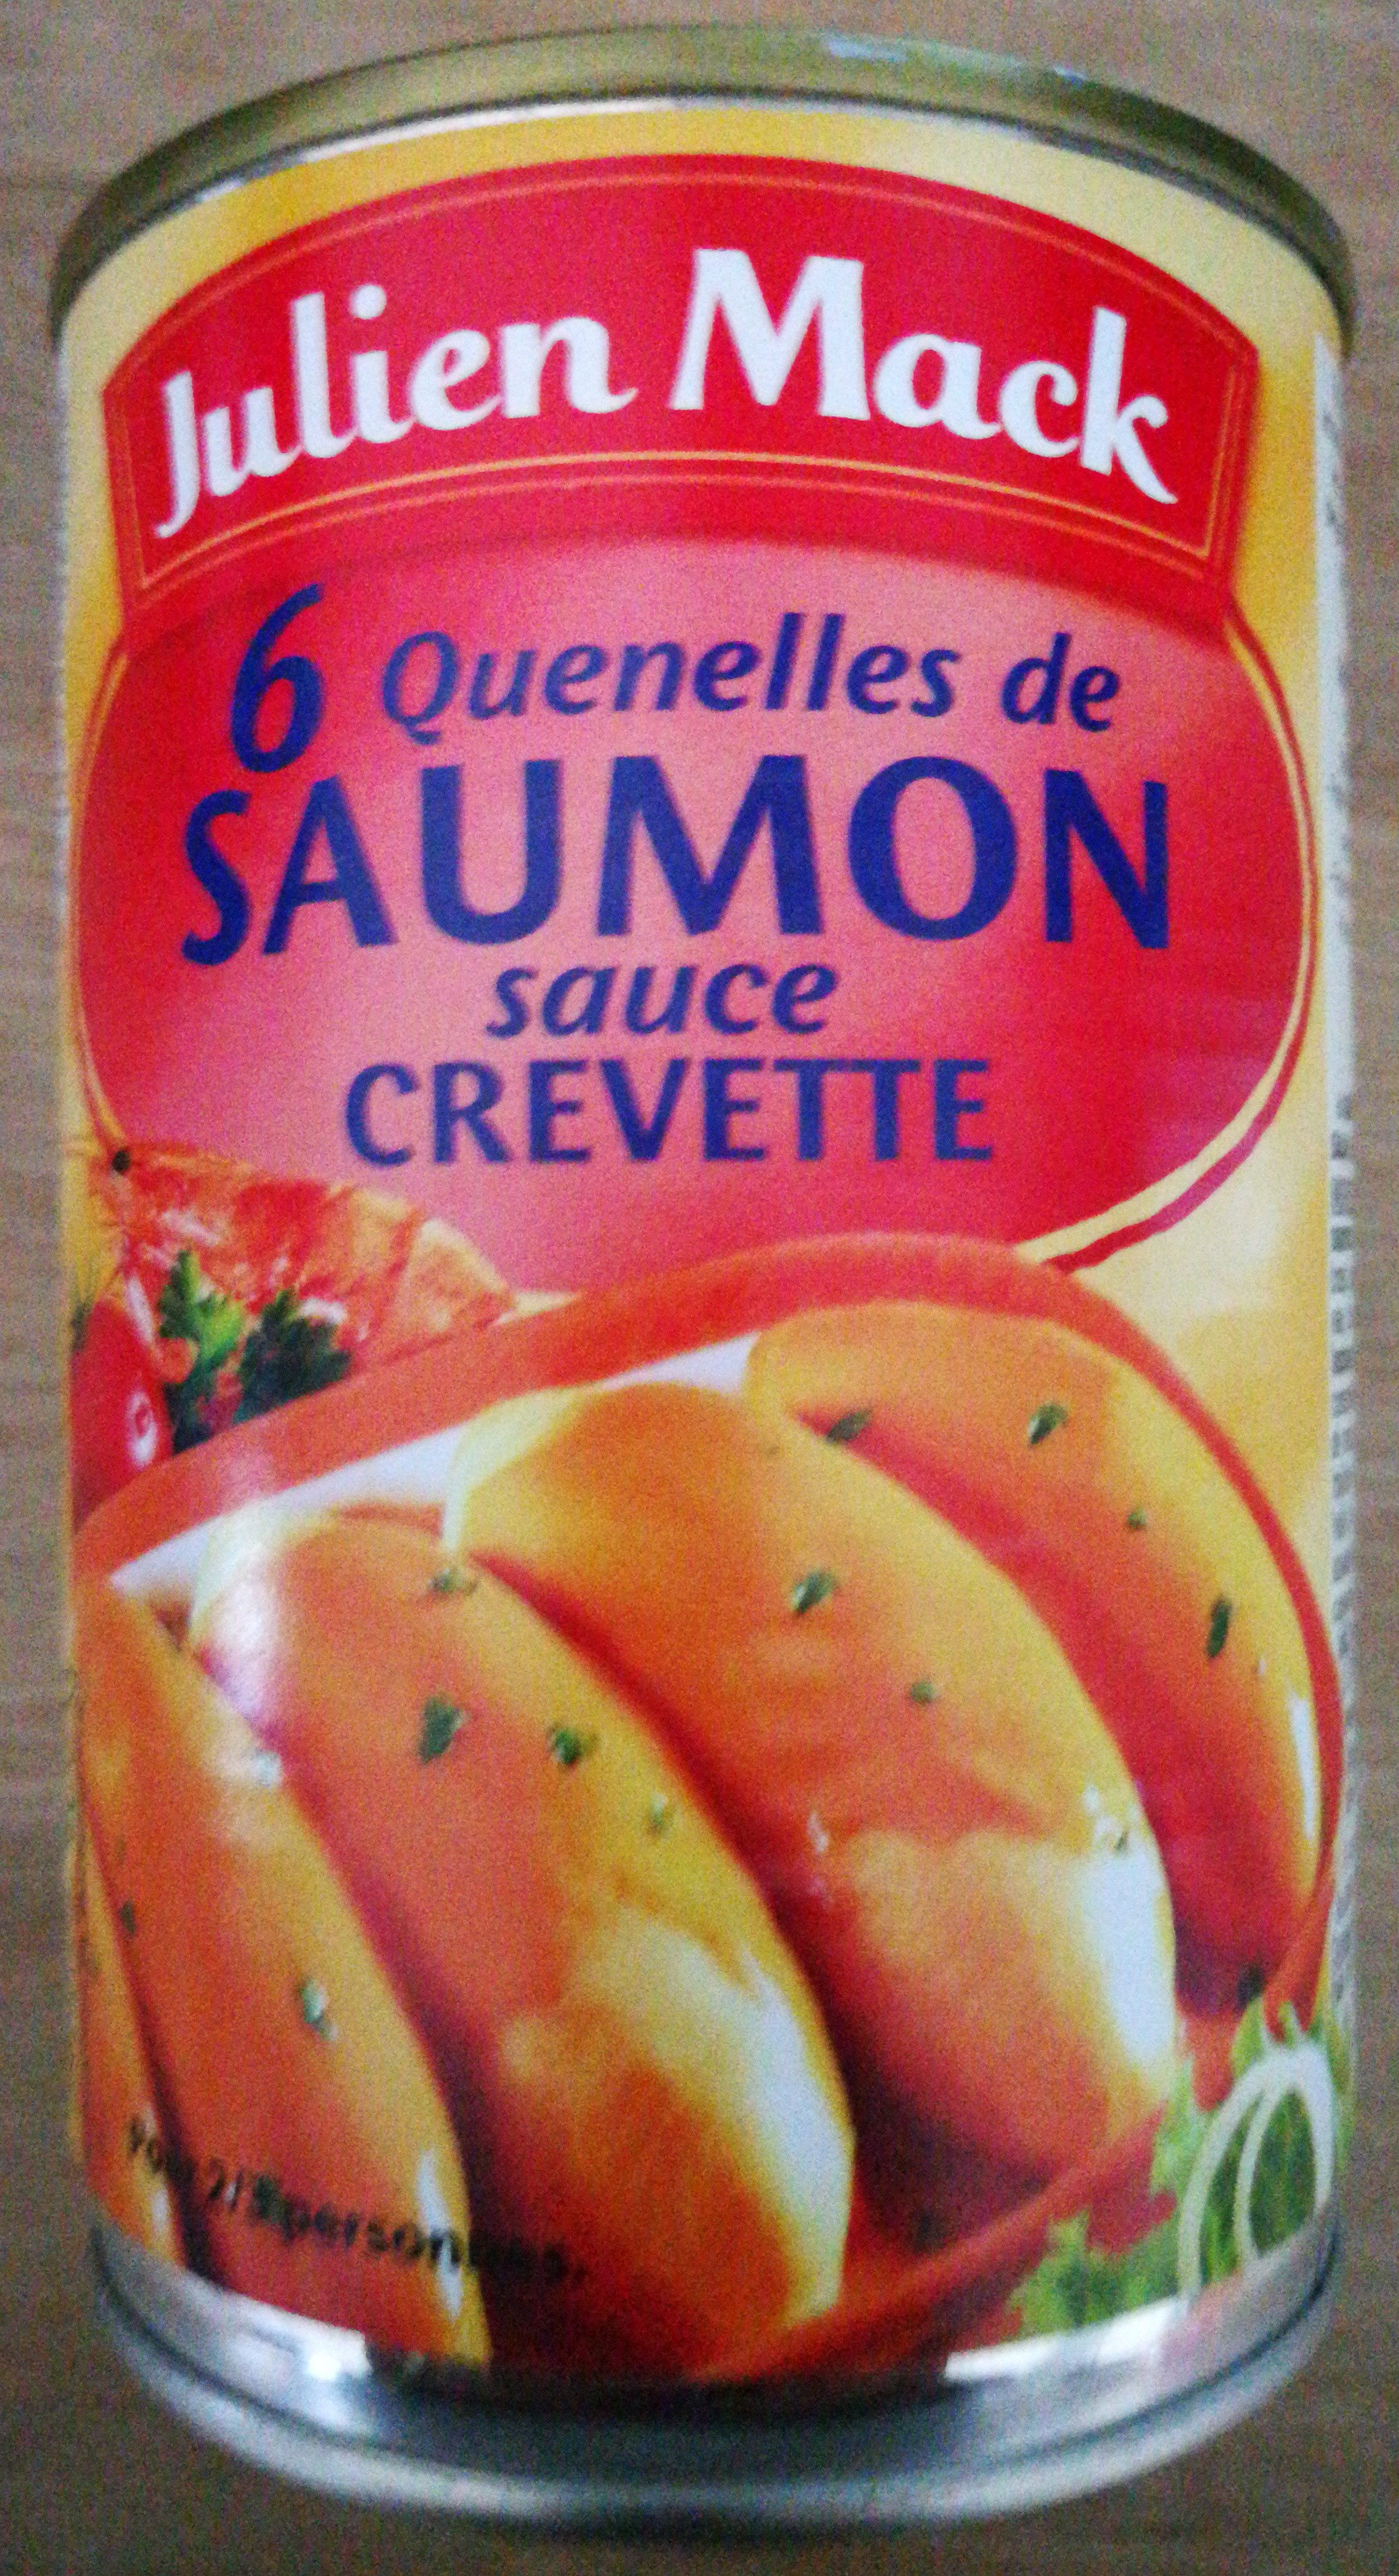 6 quenelles de saumon sauce crevettr - Product - fr